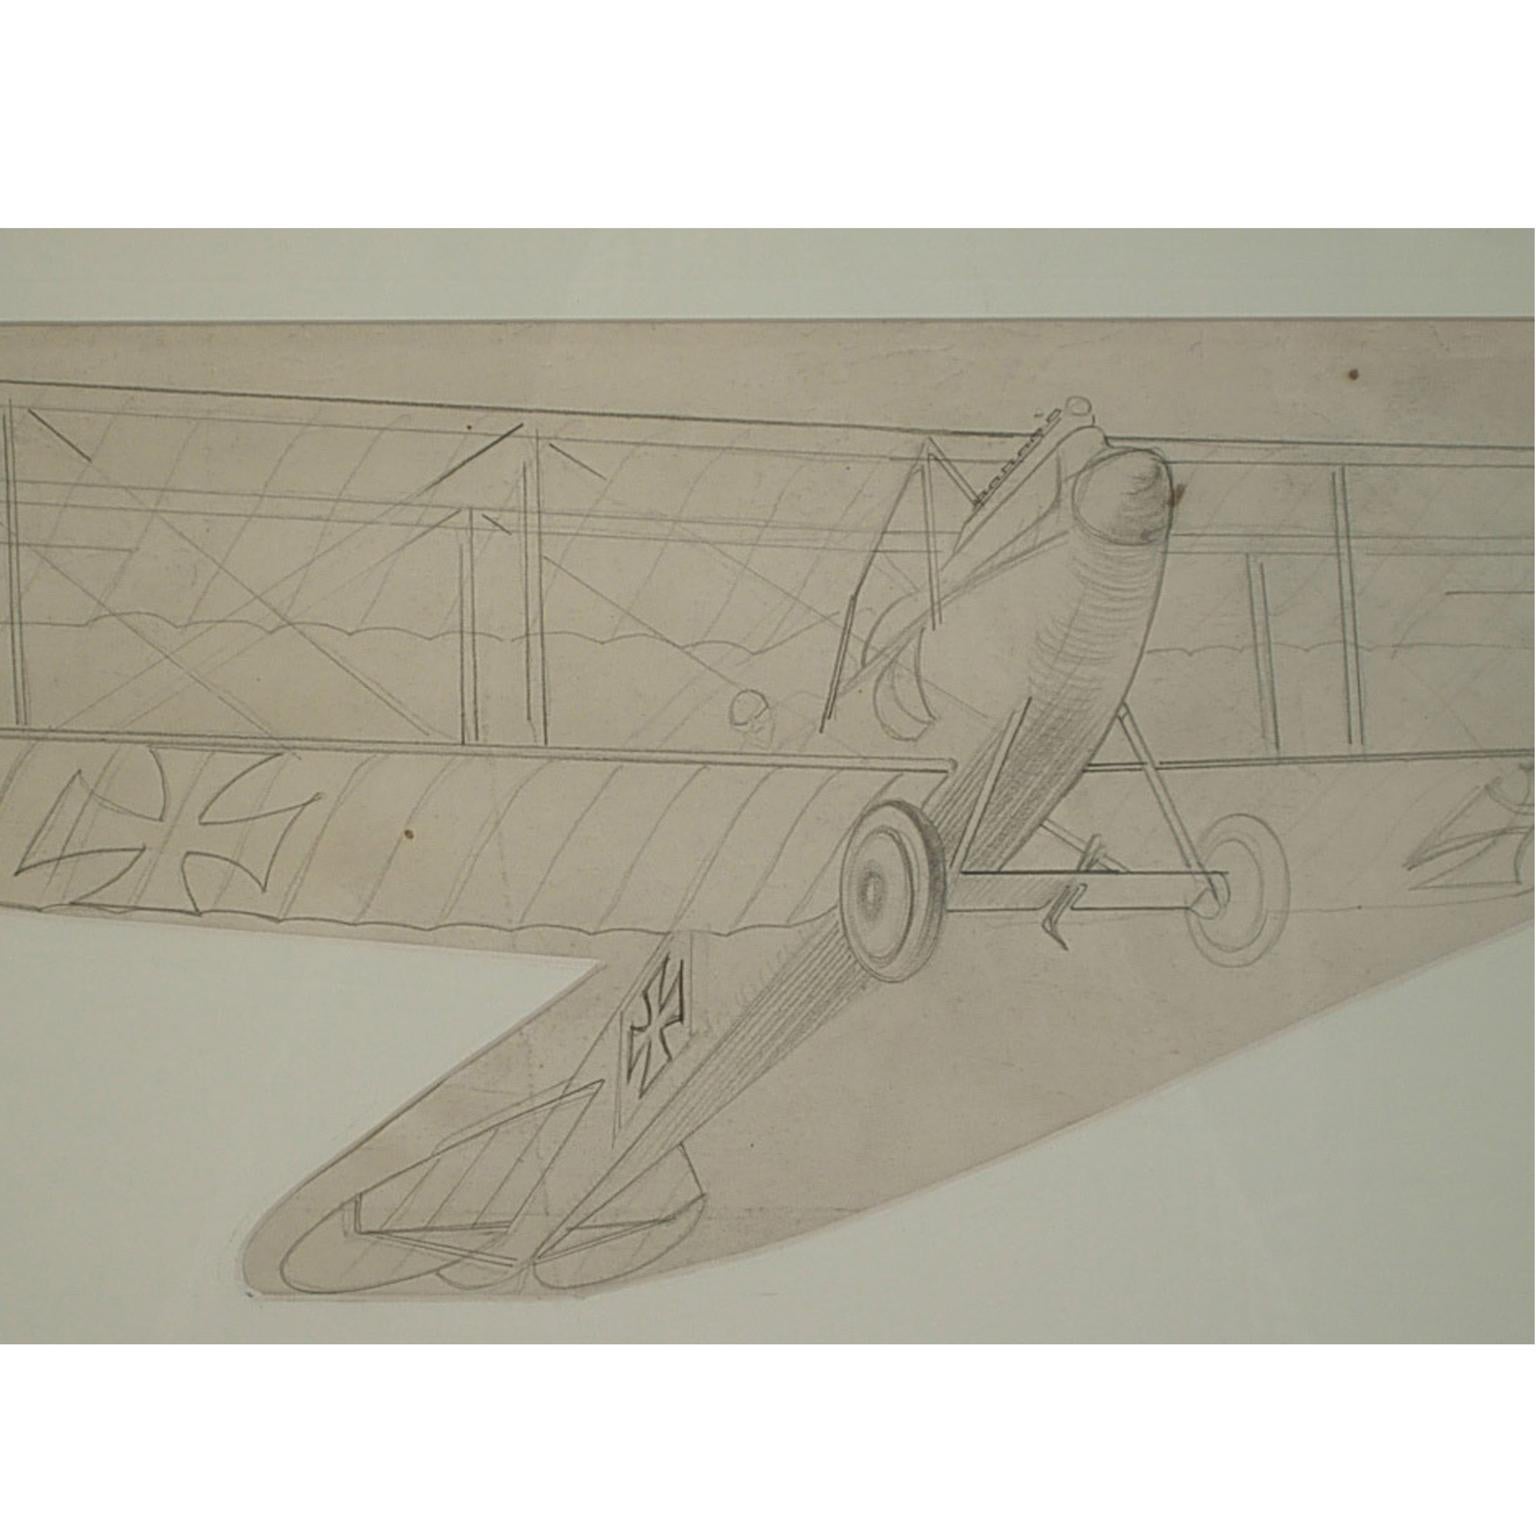 Bleistiftzeichnung eines zweisitzigen Aufklärungsdoppeldeckers Albatros C III aus dem Jahr 1916, von Riccardo Cavigioli. Messen mit Rahmen cm 53,5 x 31,4 - Zoll 21 x 13.

Riccardo Cavigioli wurde am 10. November 1895 in Mailand geboren und starb